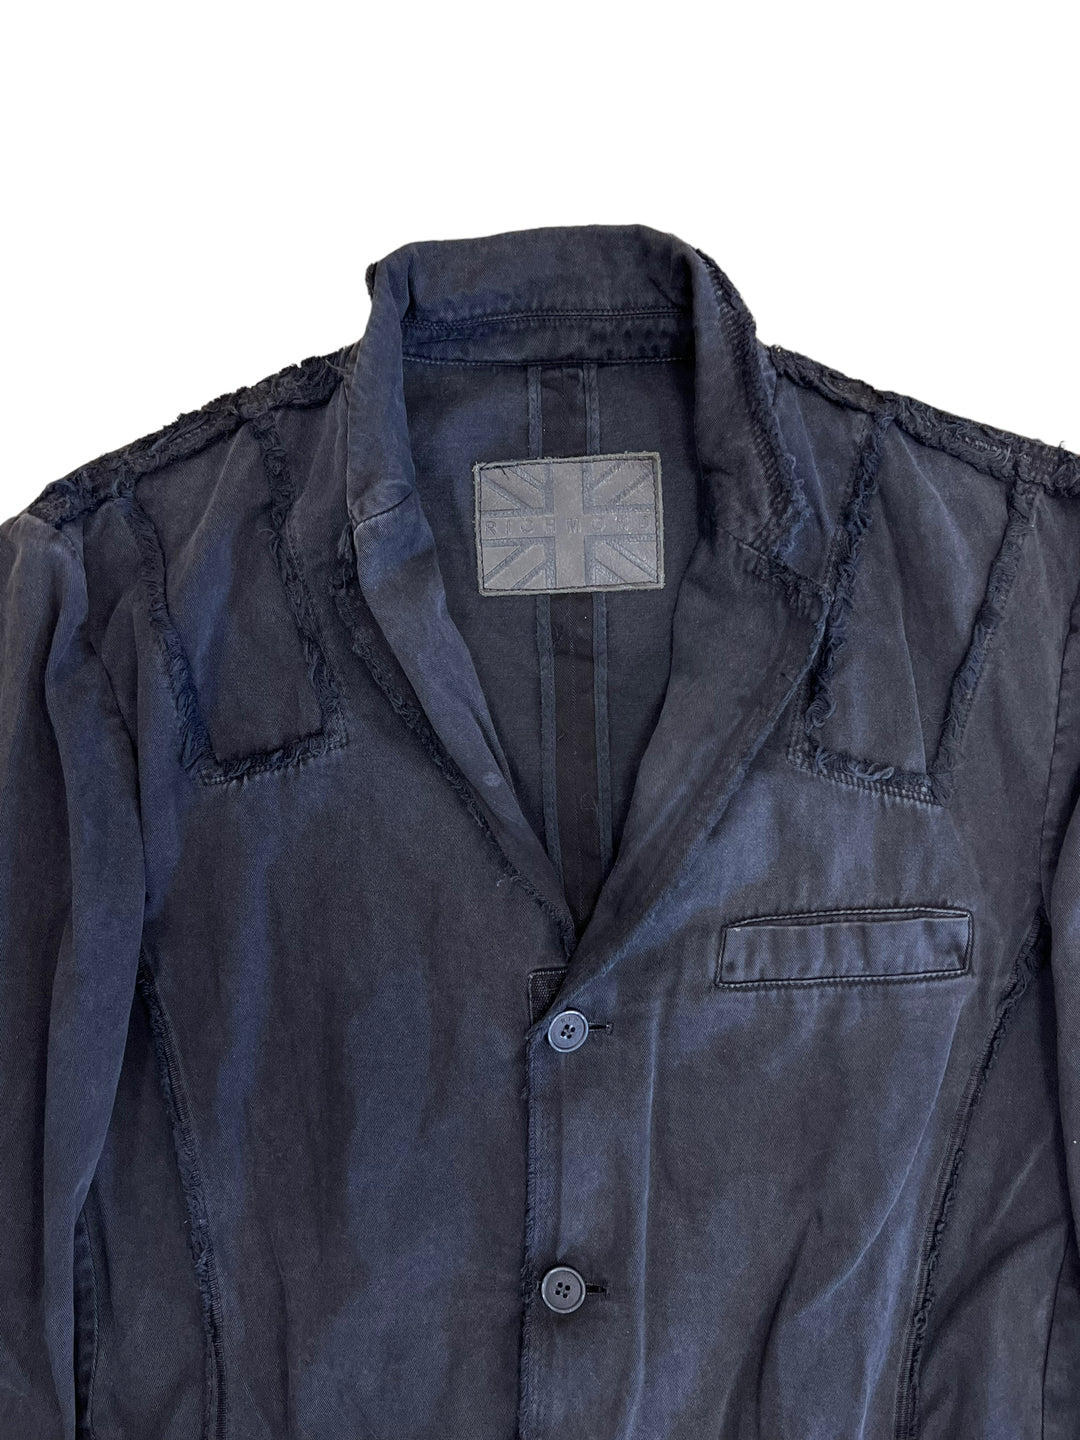 Richmond Denim Distressed Button Jacket Men’s Medium